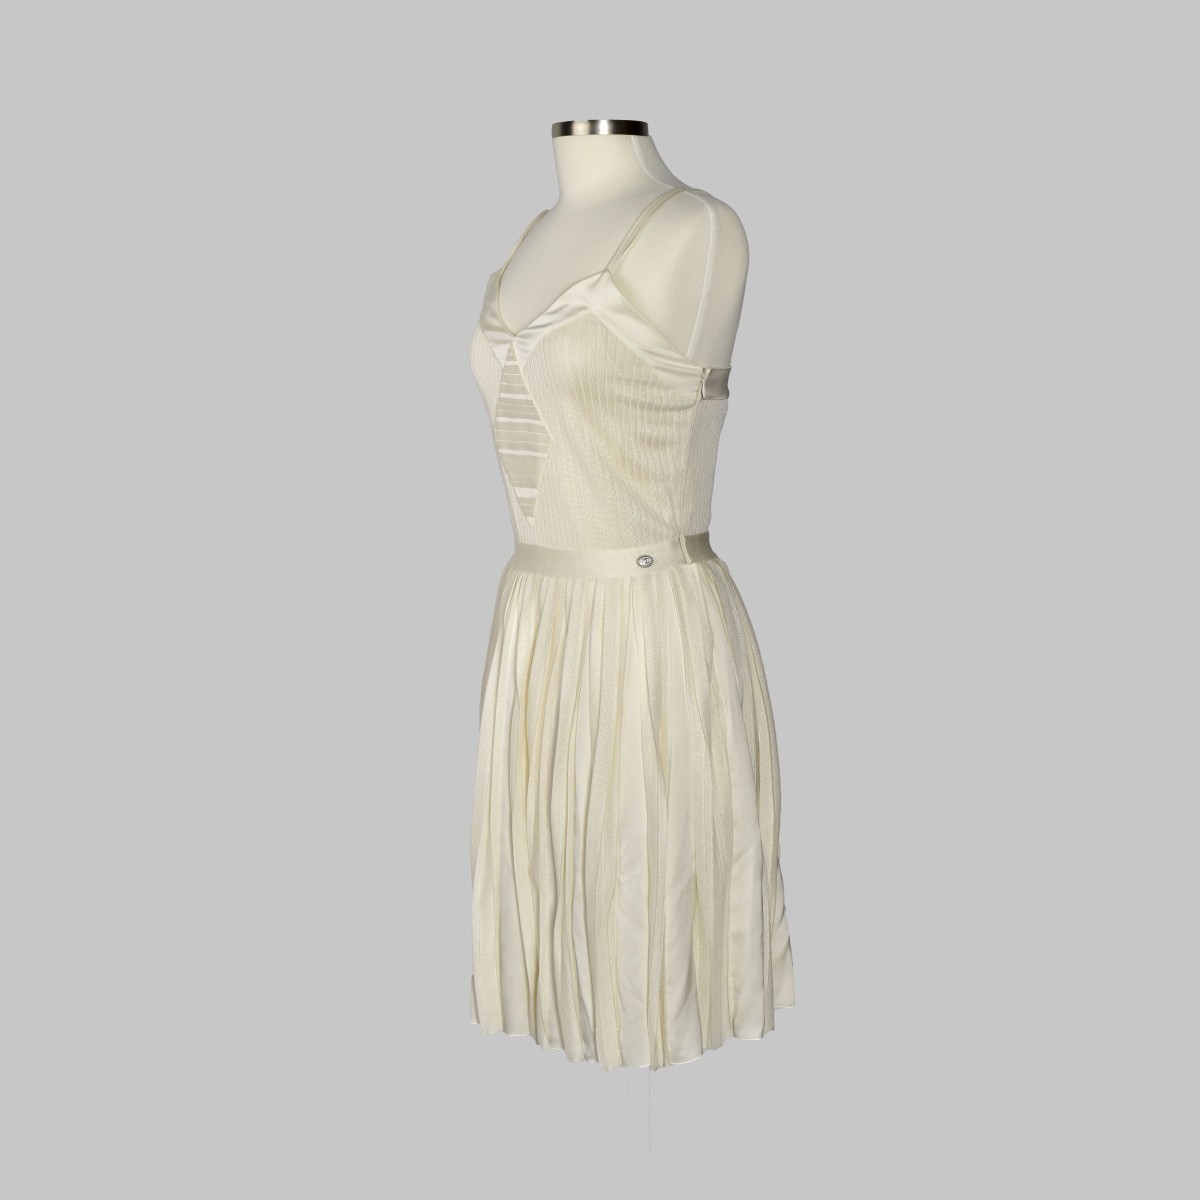 Chanel White Knit Spaghetti Strap Dress